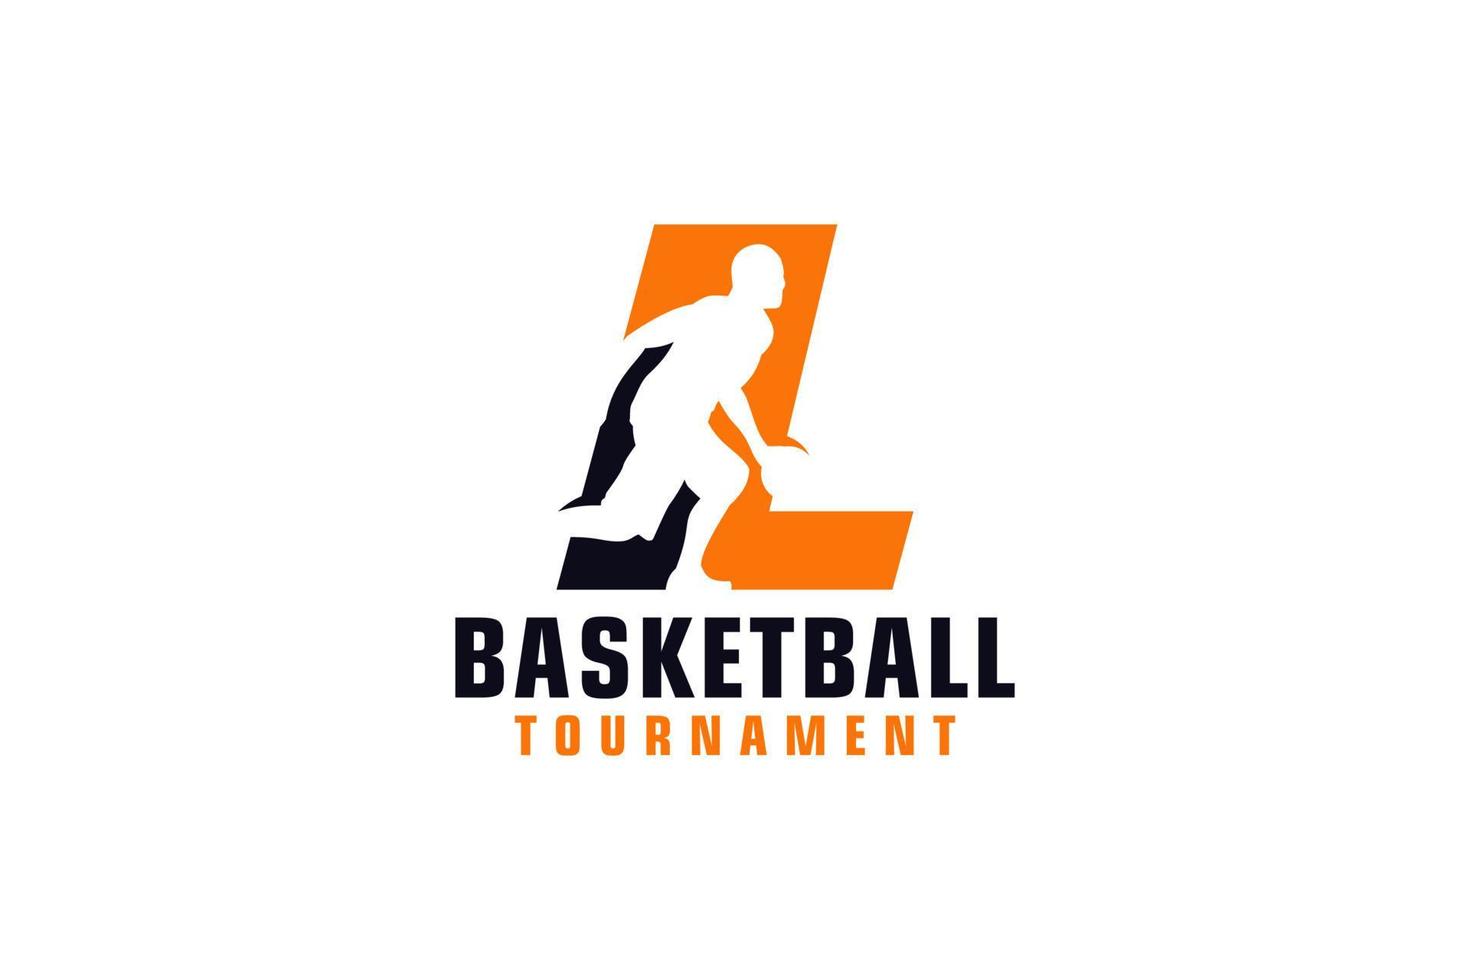 Buchstabe l mit Basketball-Logo-Design. Vektordesign-Vorlagenelemente für Sportteams oder Corporate Identity. vektor